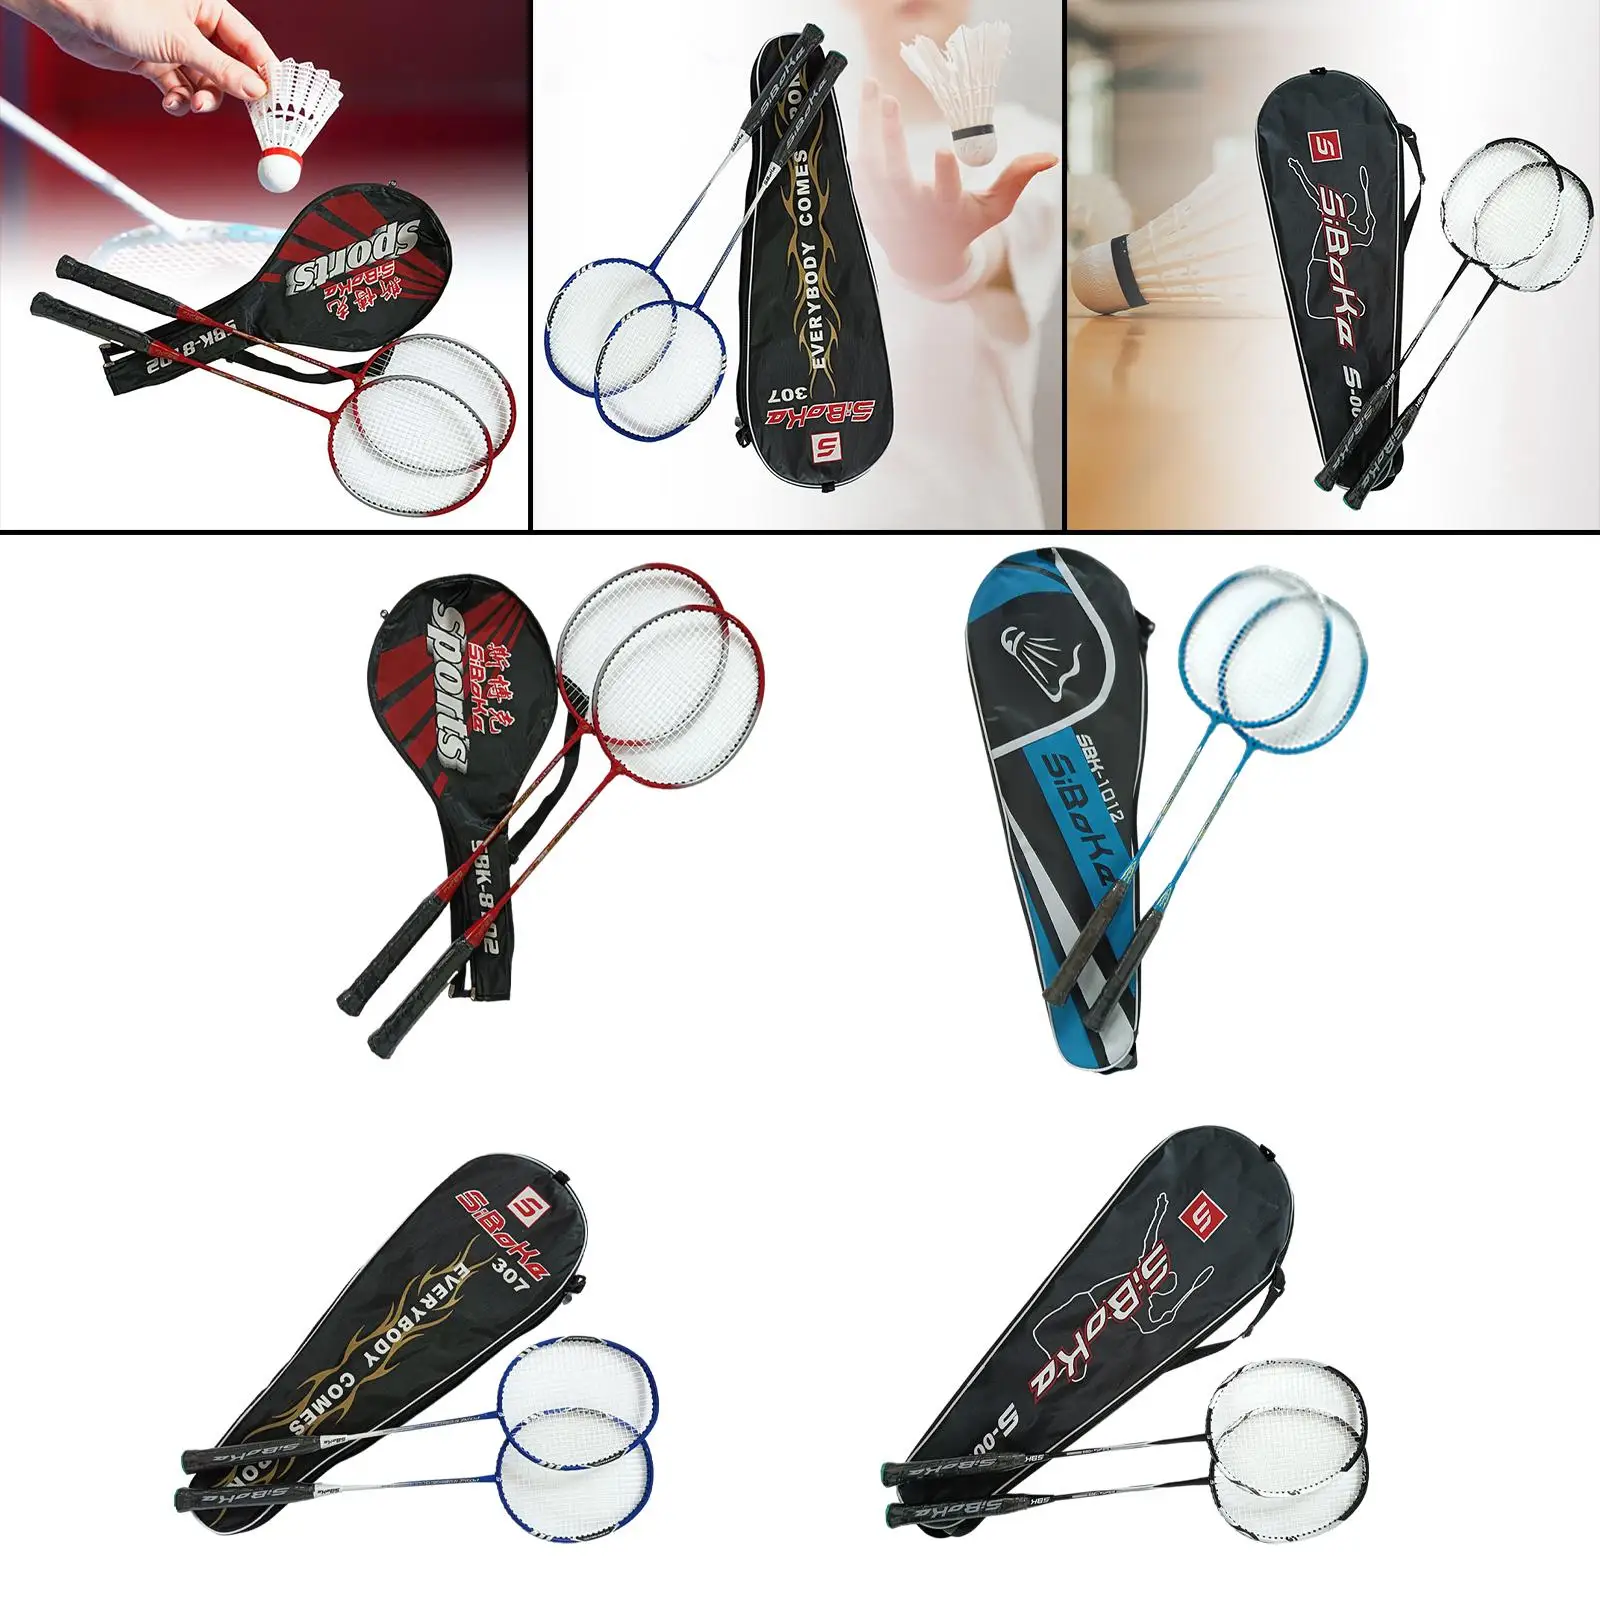 2 Pieces Badminton Racquet Set Durable Badminton Rackets for Children Adults